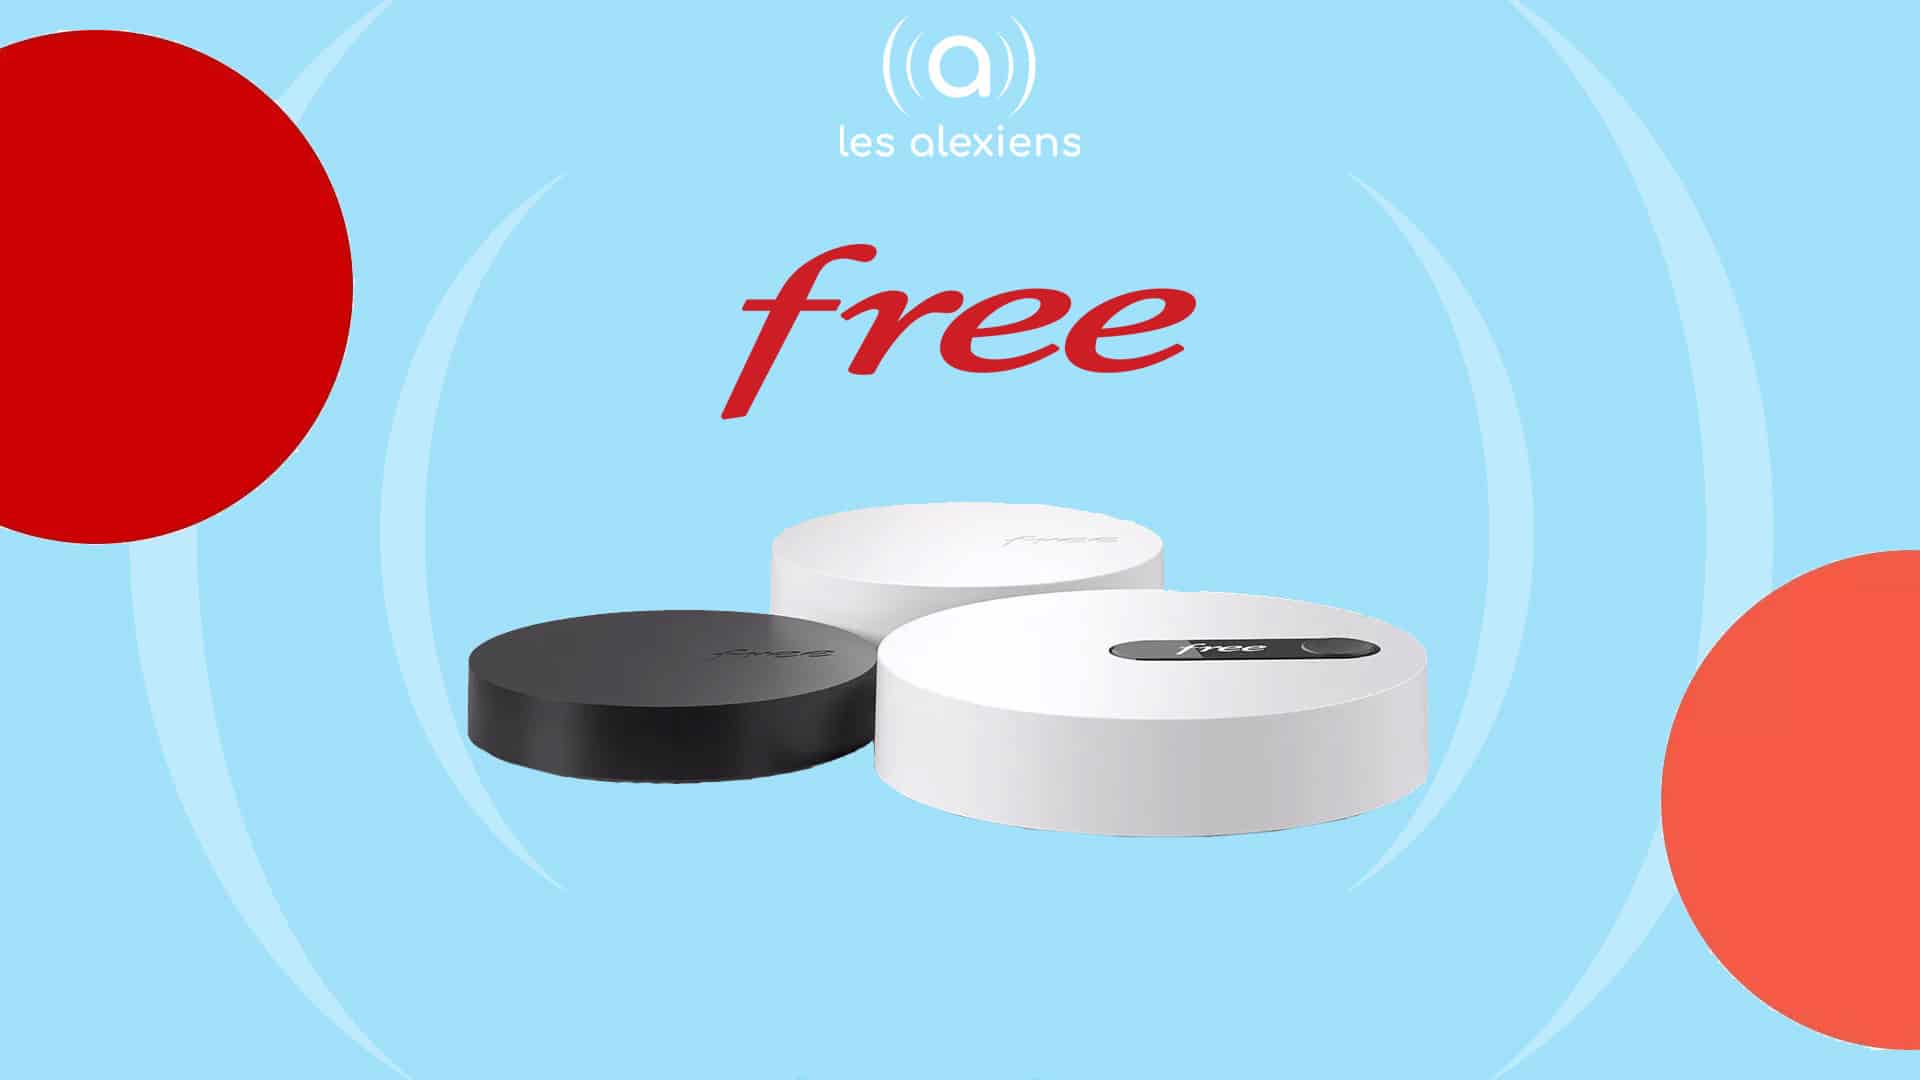 Free dévoile sa nouvelle Freebox Pop – Les Alexiens